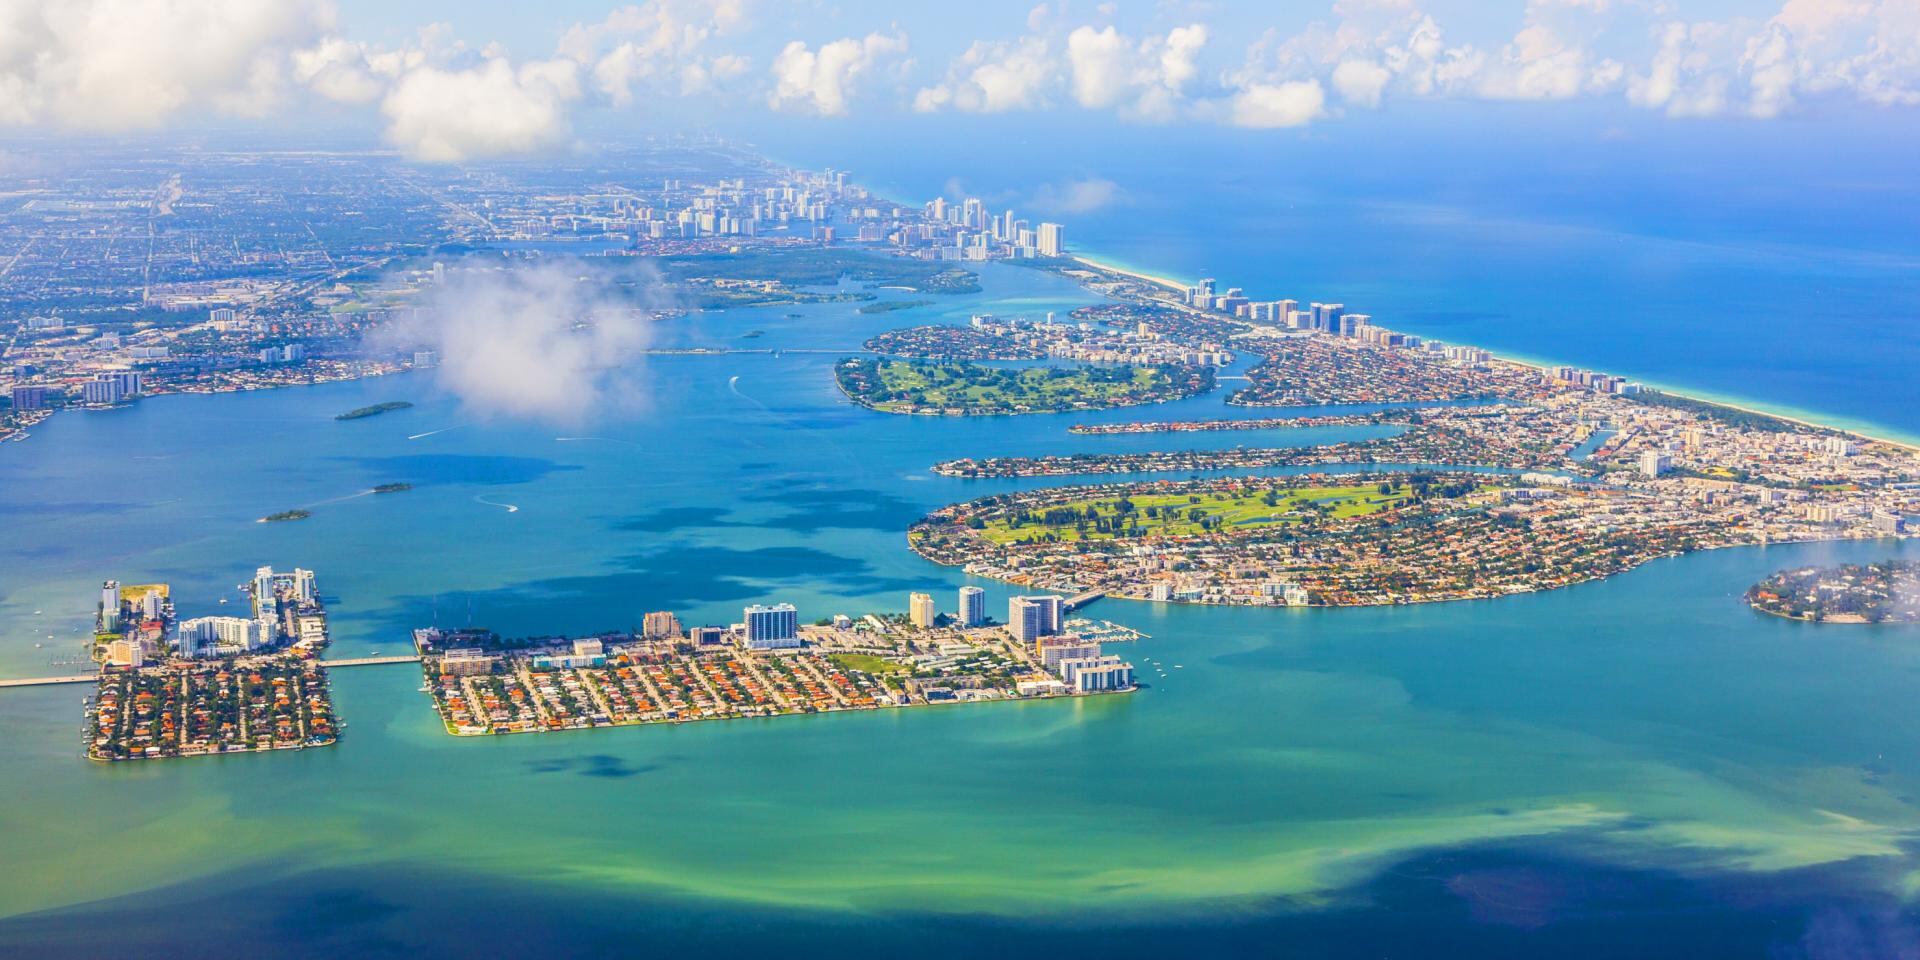 Si quieres hacer un viaje para aprovechar el sol y las playas te recomendamos que viajes a Miami de mayo a septiembre.